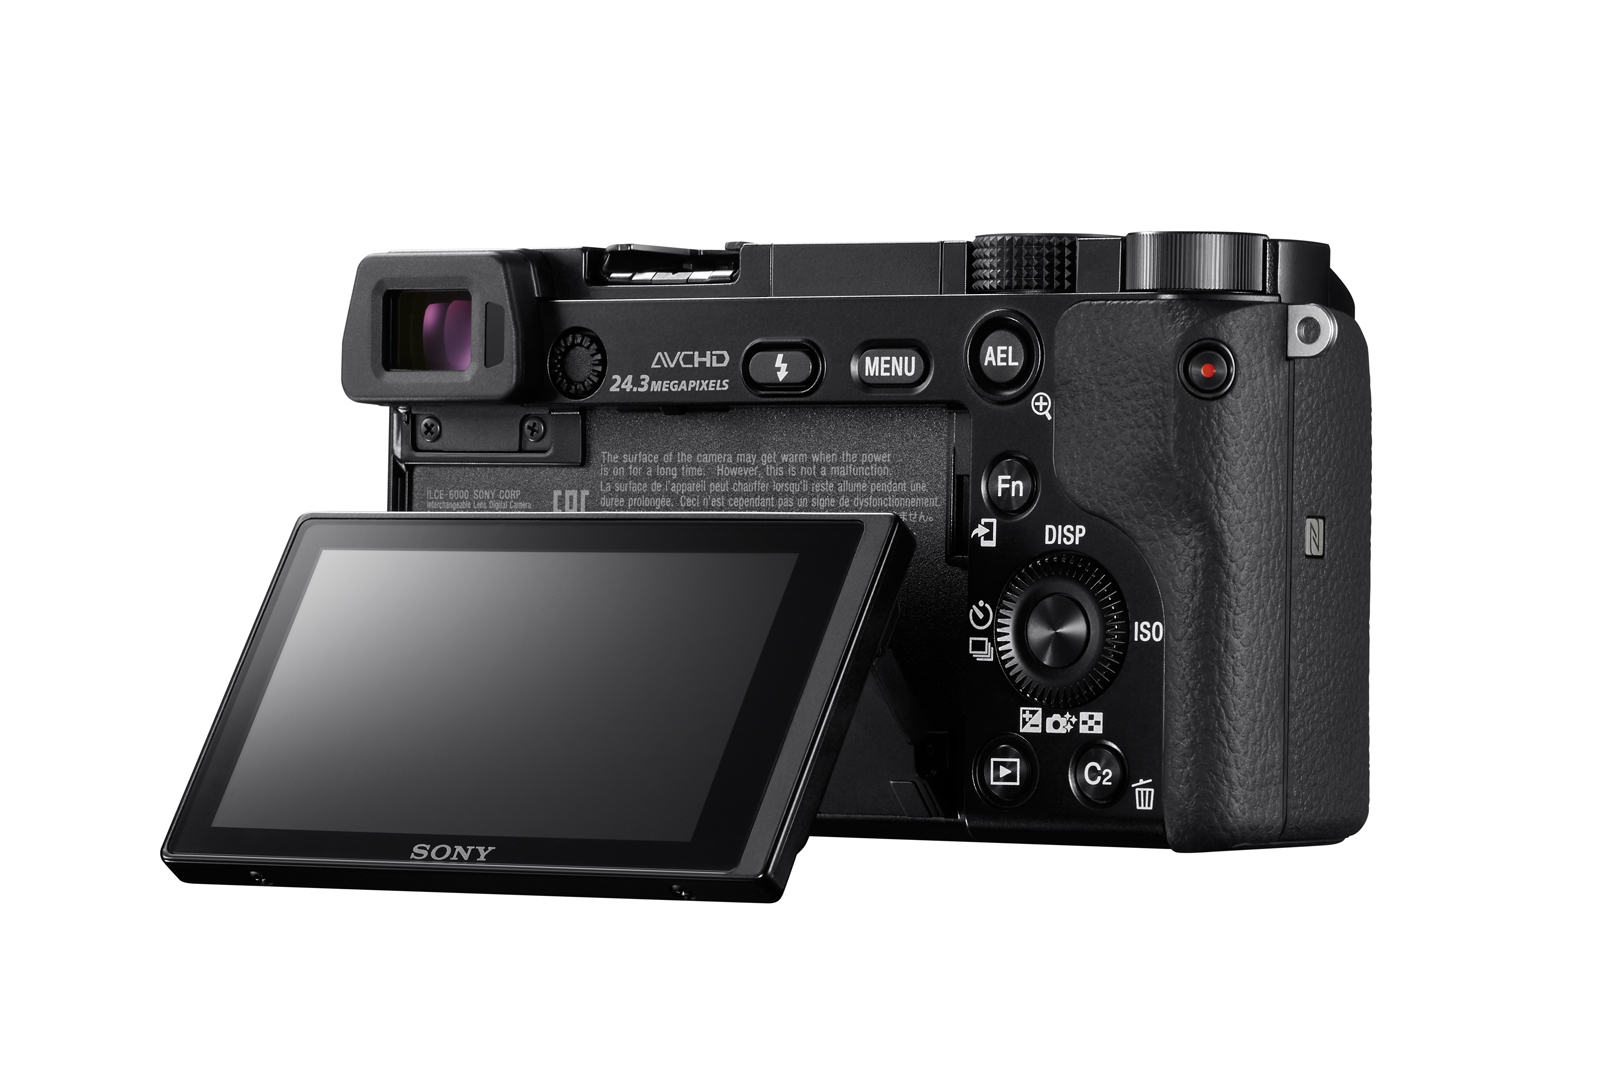 Fotocamera digitale Sony Alpha 6000L, fotocamera mirrorless con obiettivo 16-50 mm, attacco E, sensore APS-C, 24.3 MP